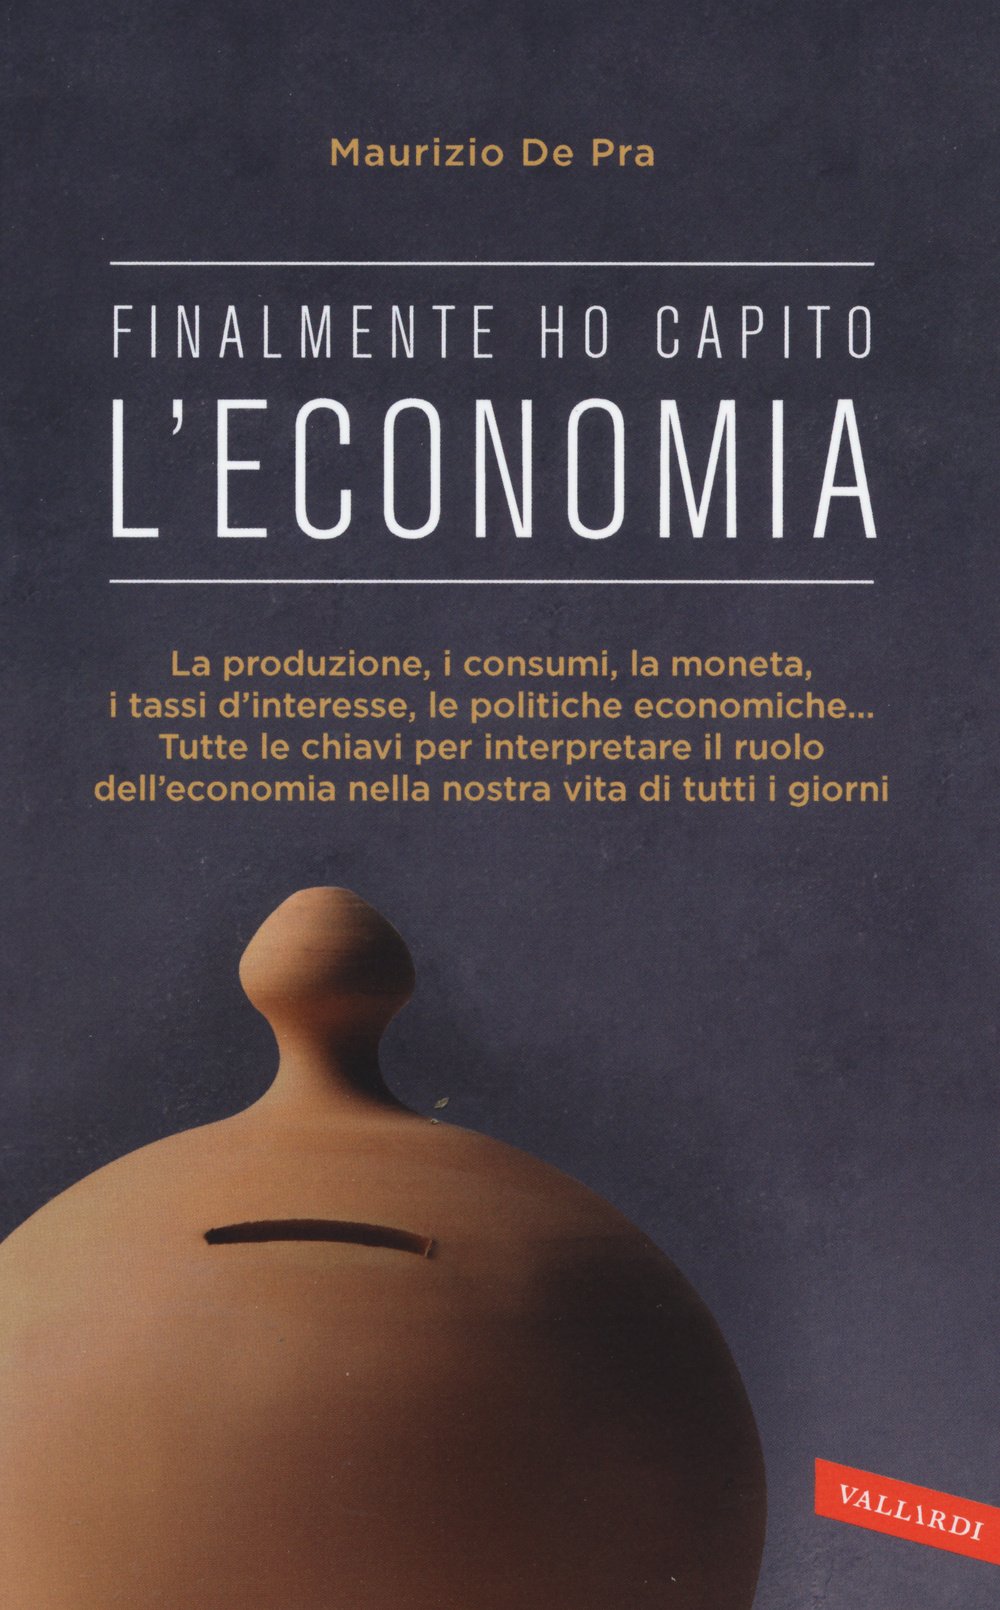 Libri da leggere sull'economia: finalmente ho capito l'economia - Maurizio De Pra